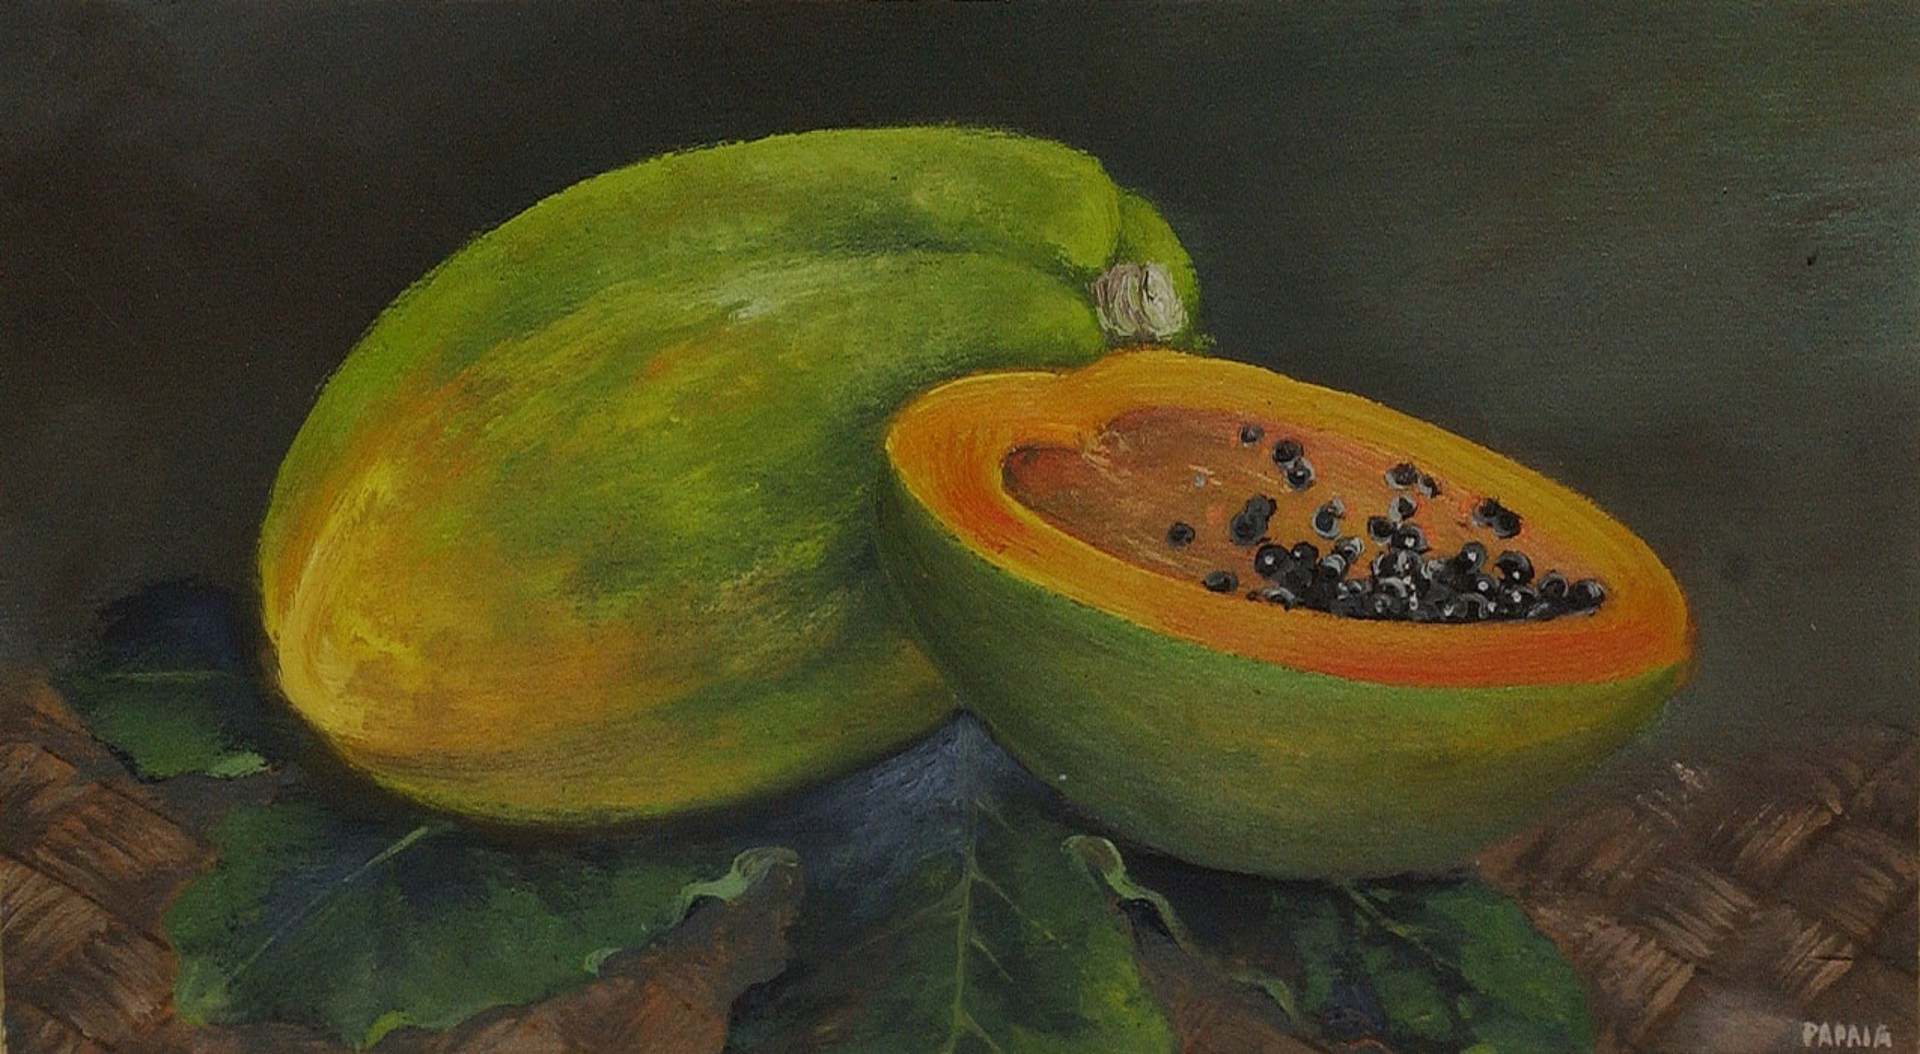 "Papaia" by Ogura Yonesuke Itoh